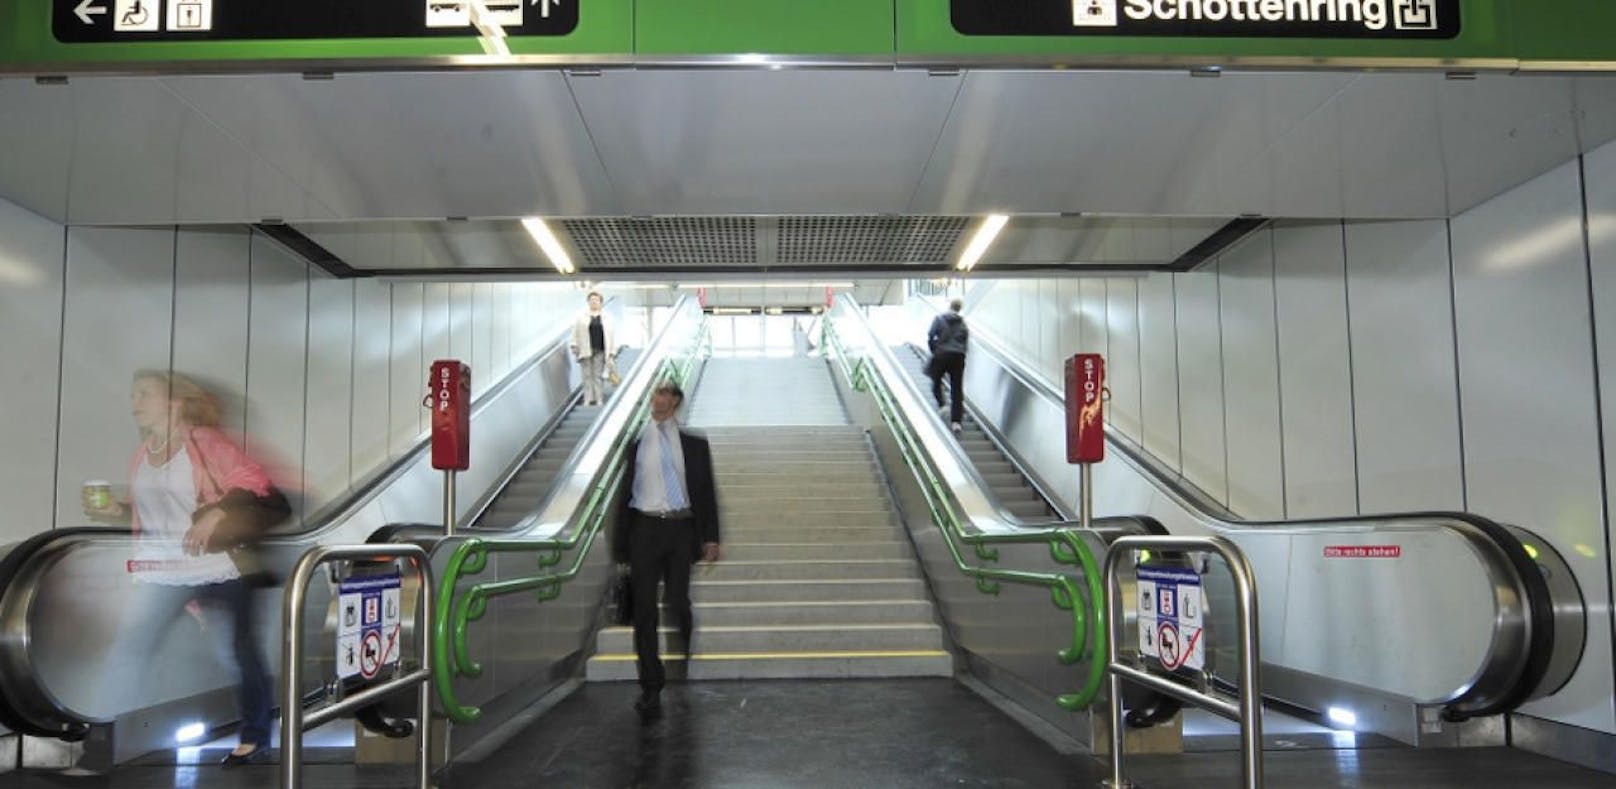 (Symbolbild) In der U-Bahn-Station Schottenring ging der Polizei ein mehrfacher Dieb ins Netz.